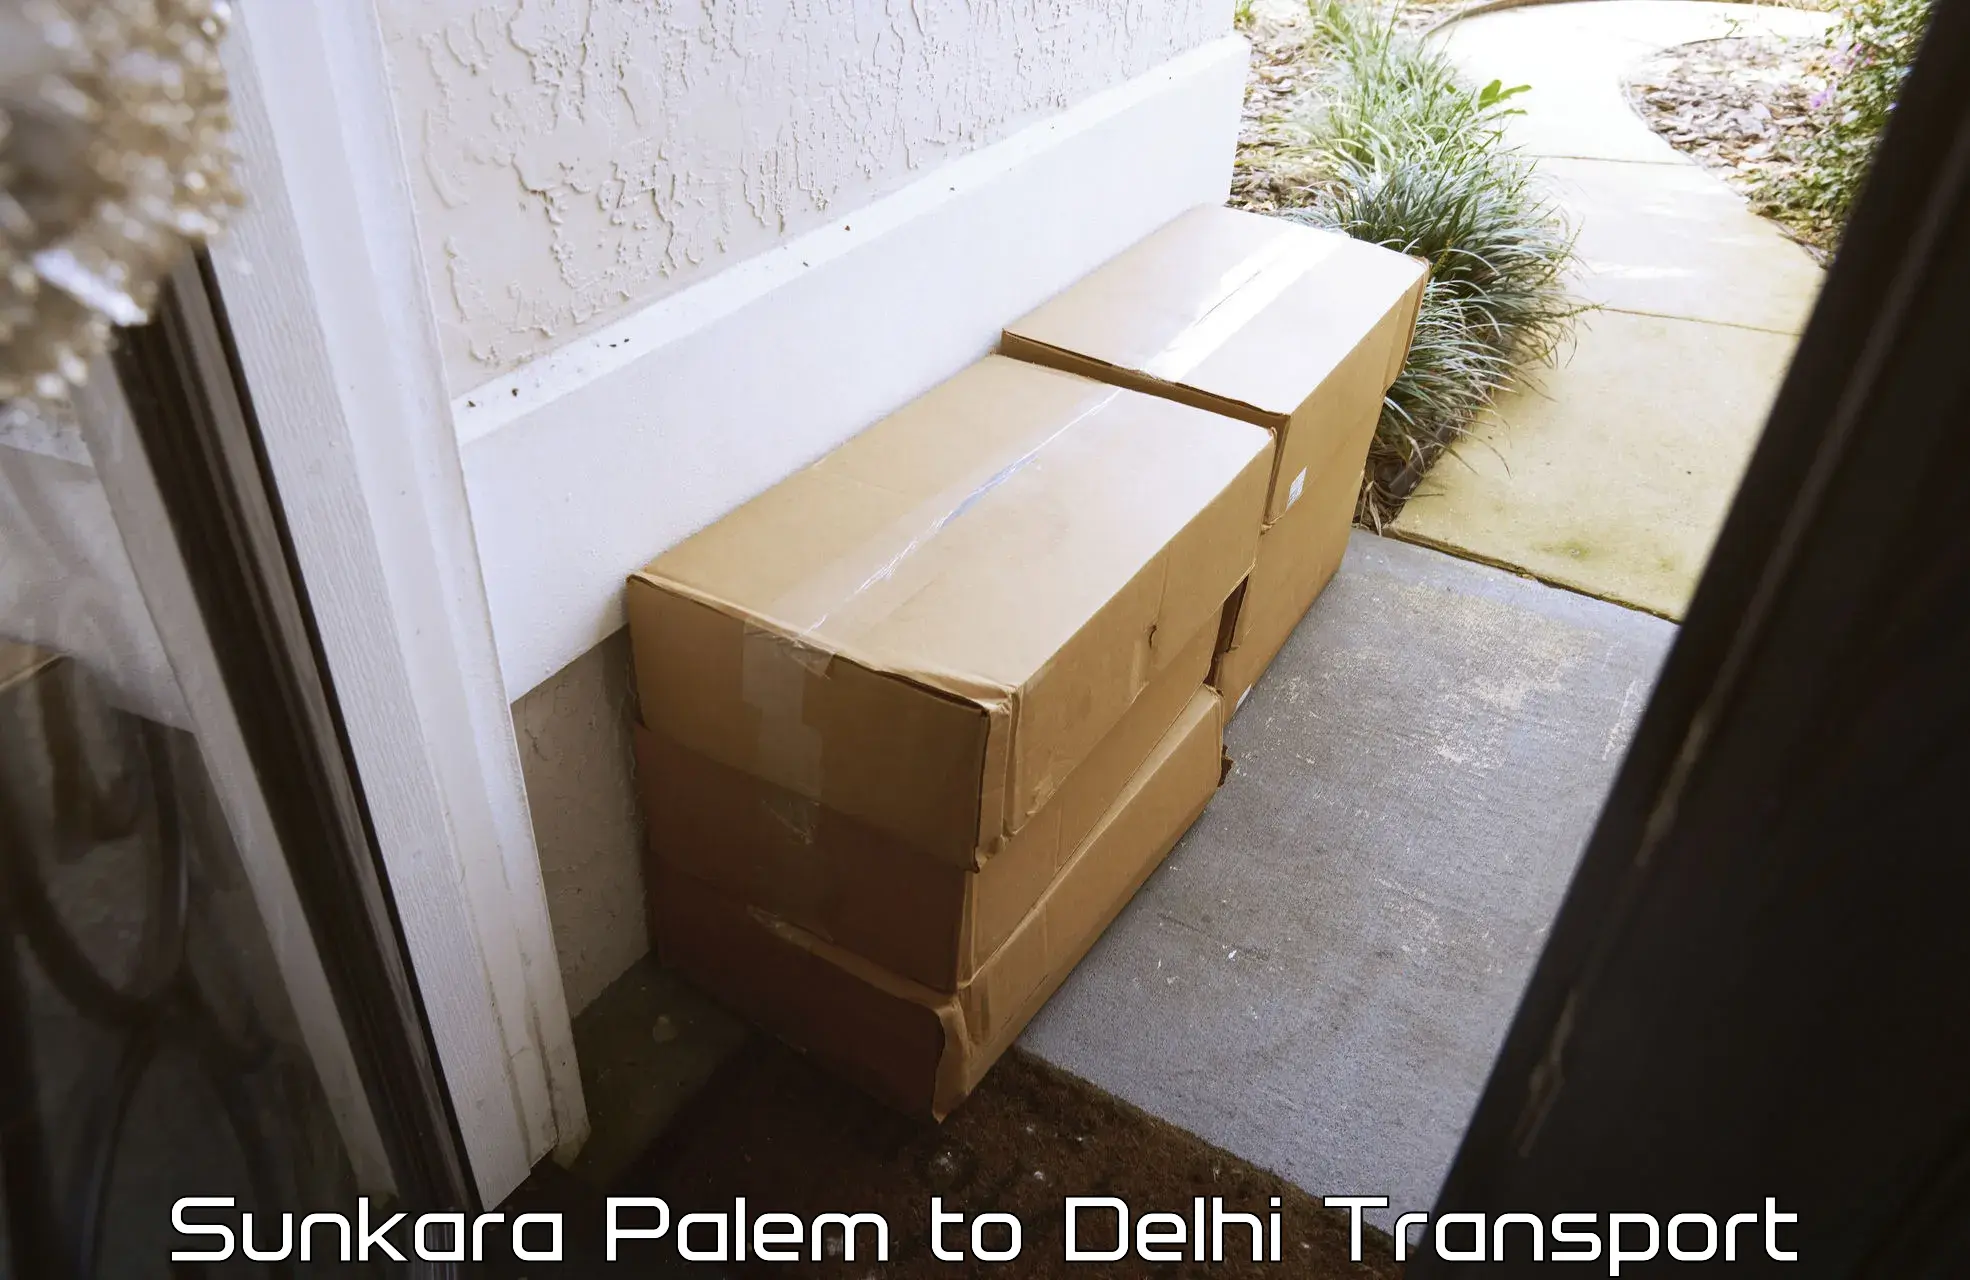 Daily transport service Sunkara Palem to Ashok Vihar